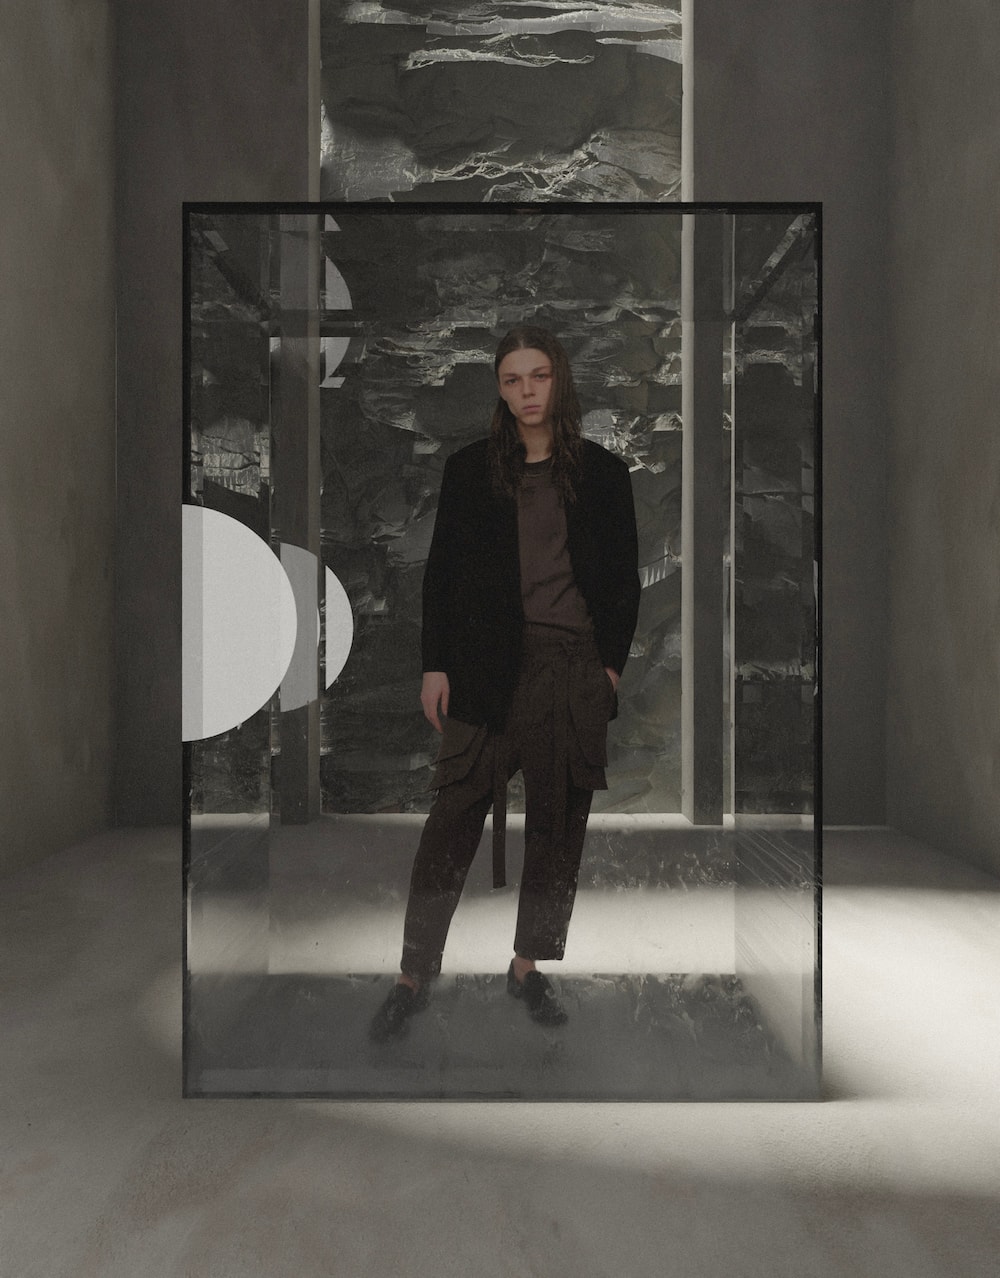 法国时装品牌 ARNODEFRANCE 发布「巨石上的独松」系列 